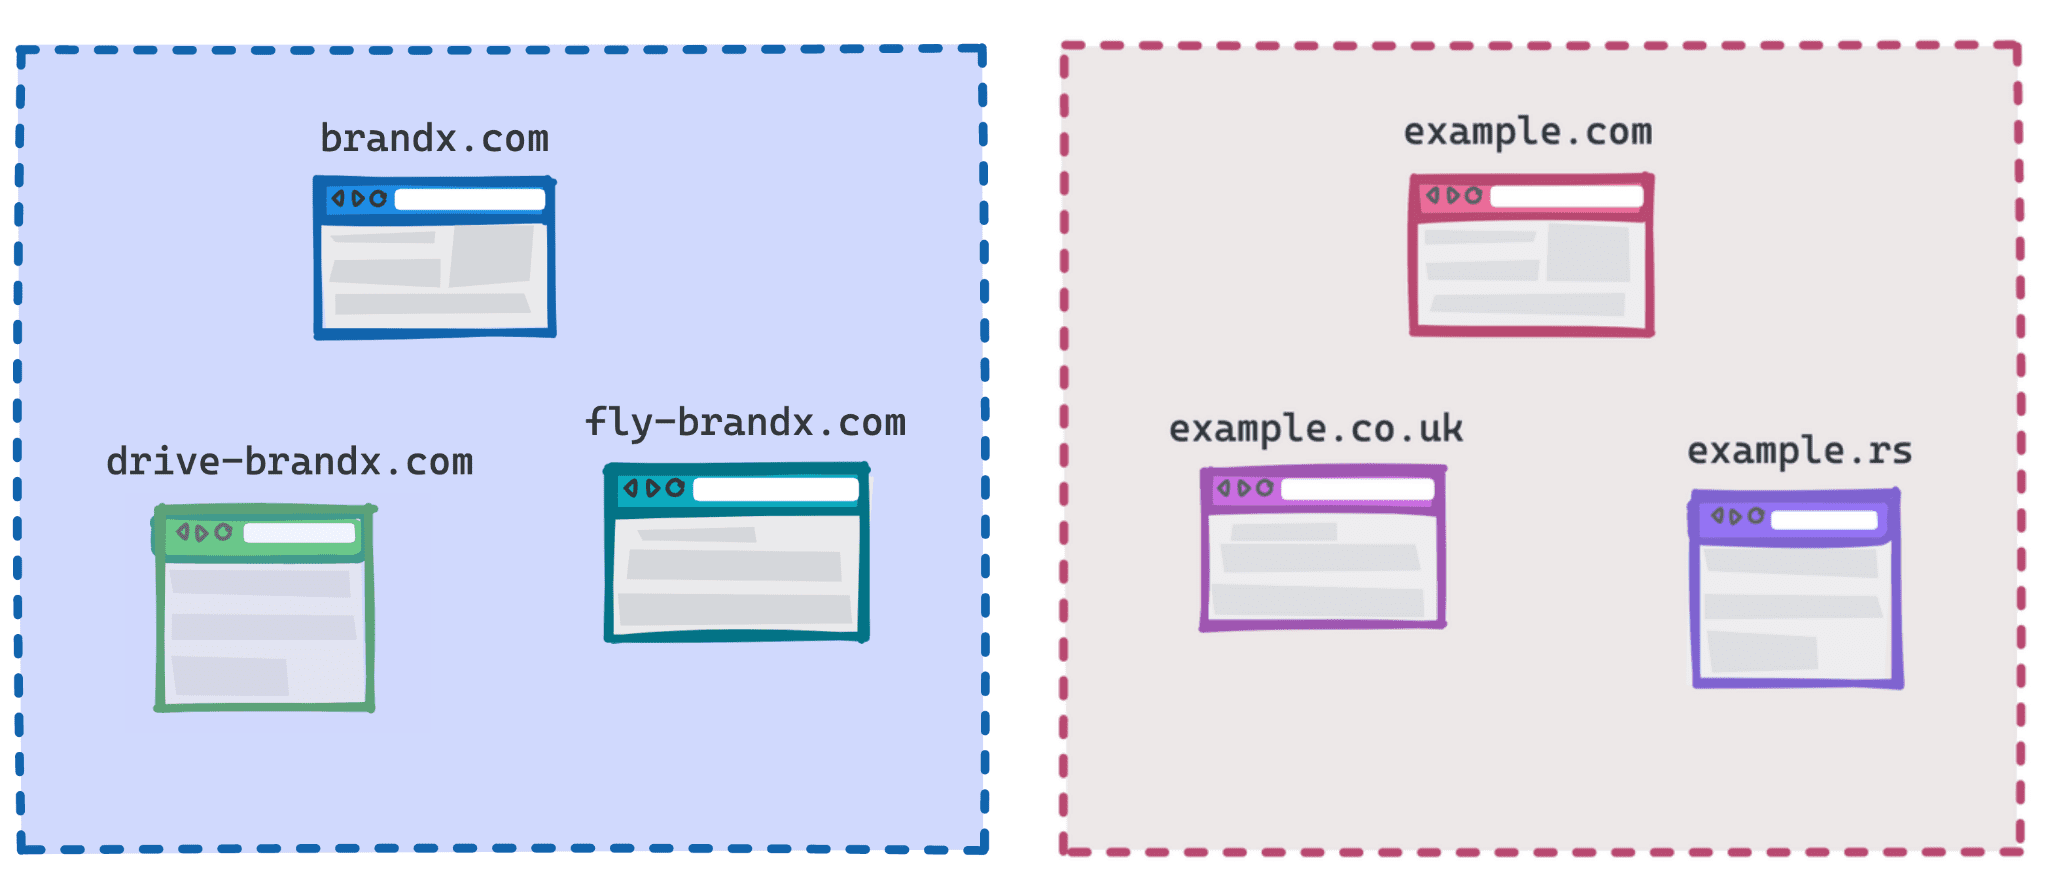 示意图：brandx.com、fly-brandx.com 和 drive-brandx.com 作为一个群组，将 example.com、example.rs、example.co.uk 作为另一个群组。